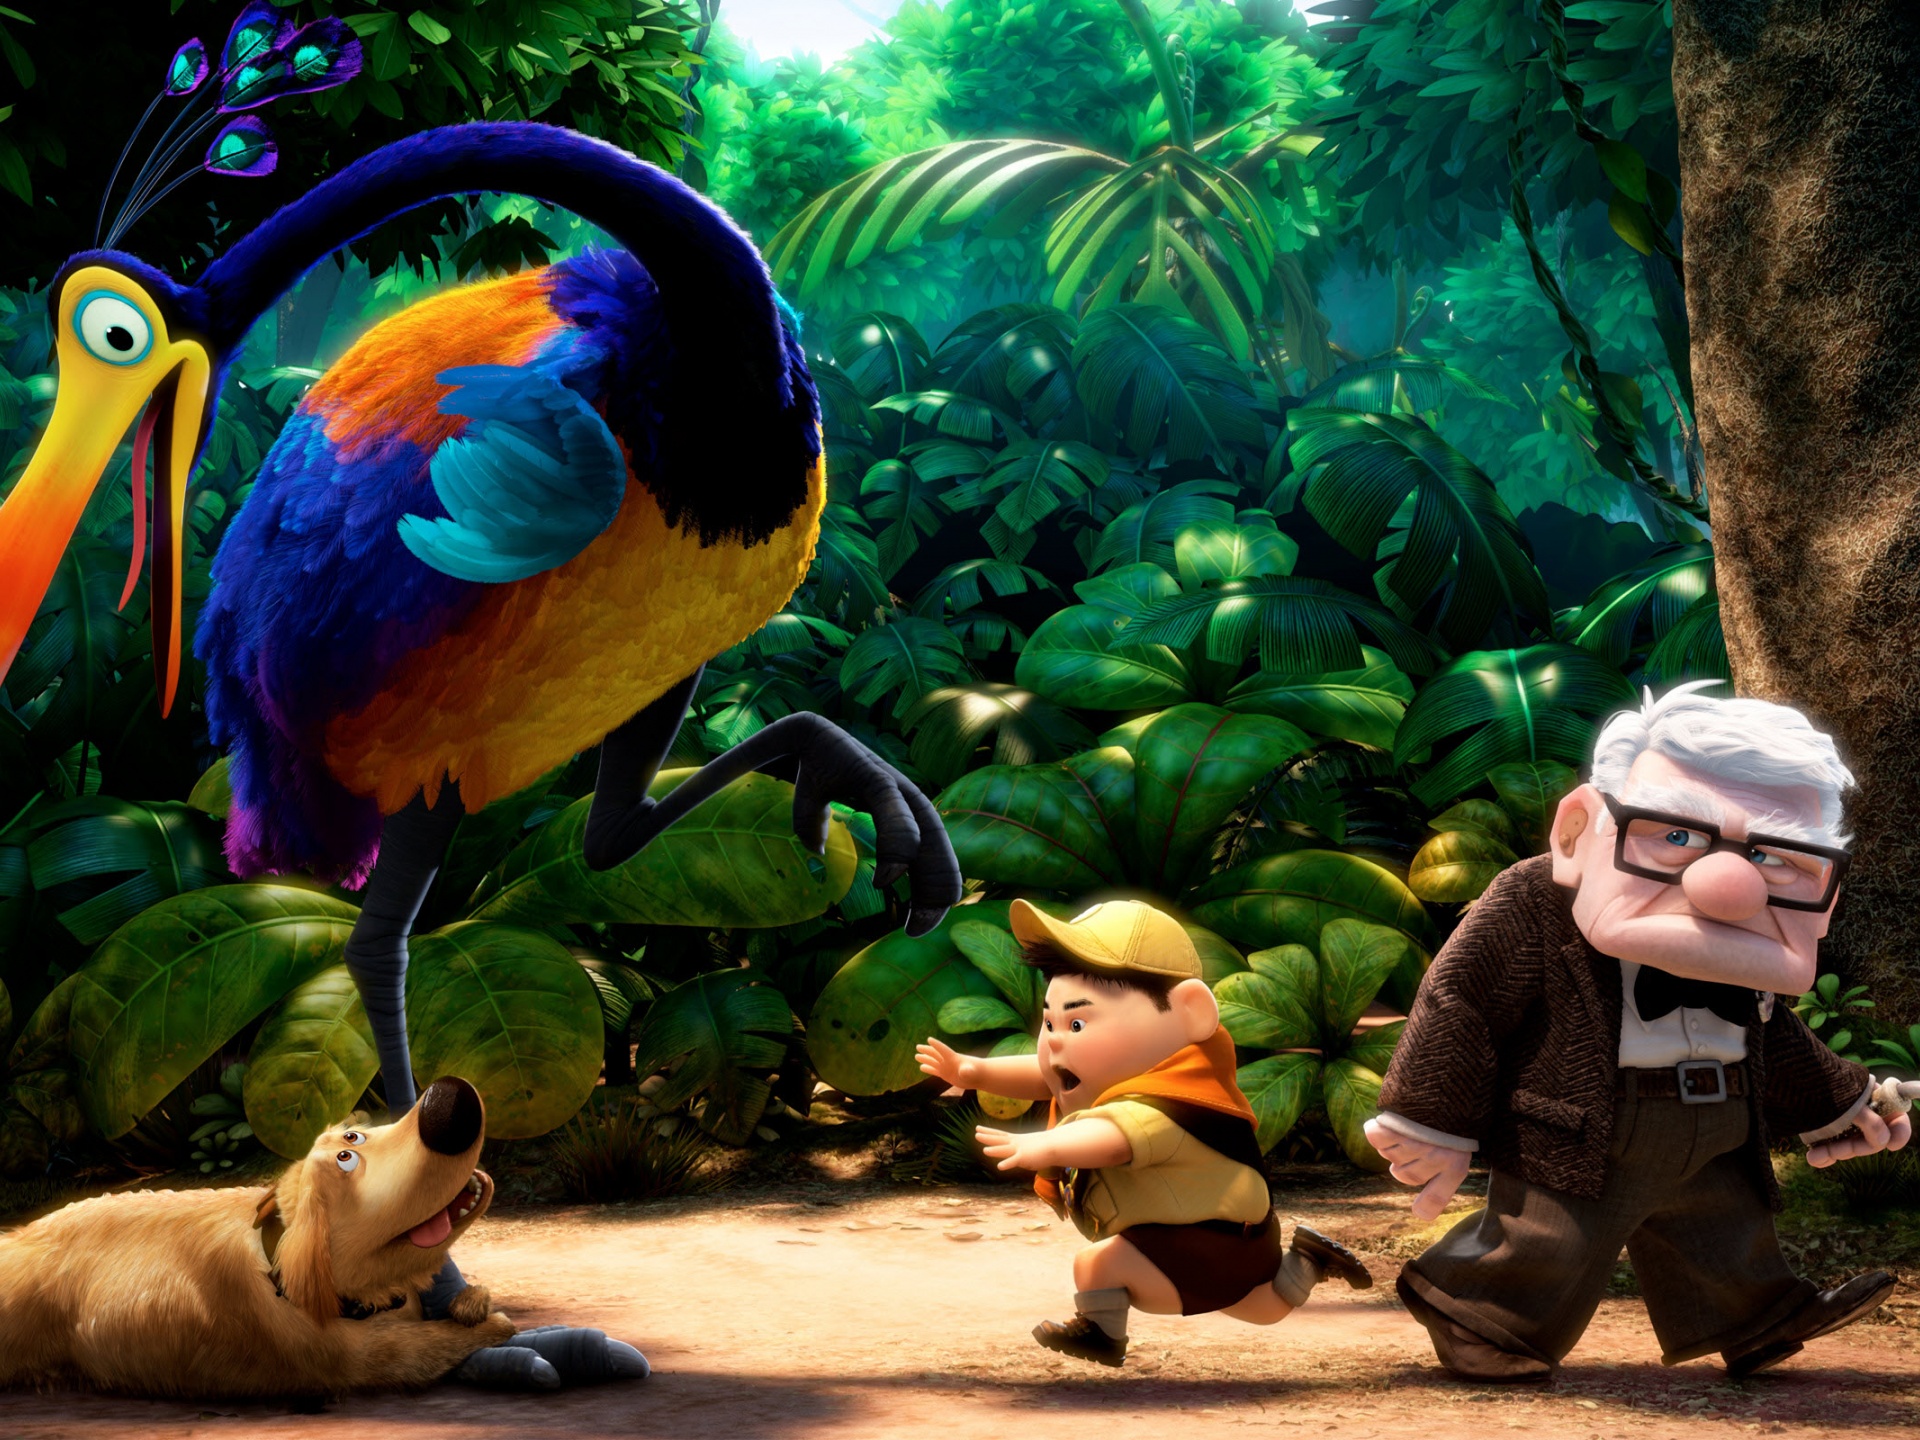 Disney Pixar Up Wallpaper Backgrounds Desktop Wallpapers